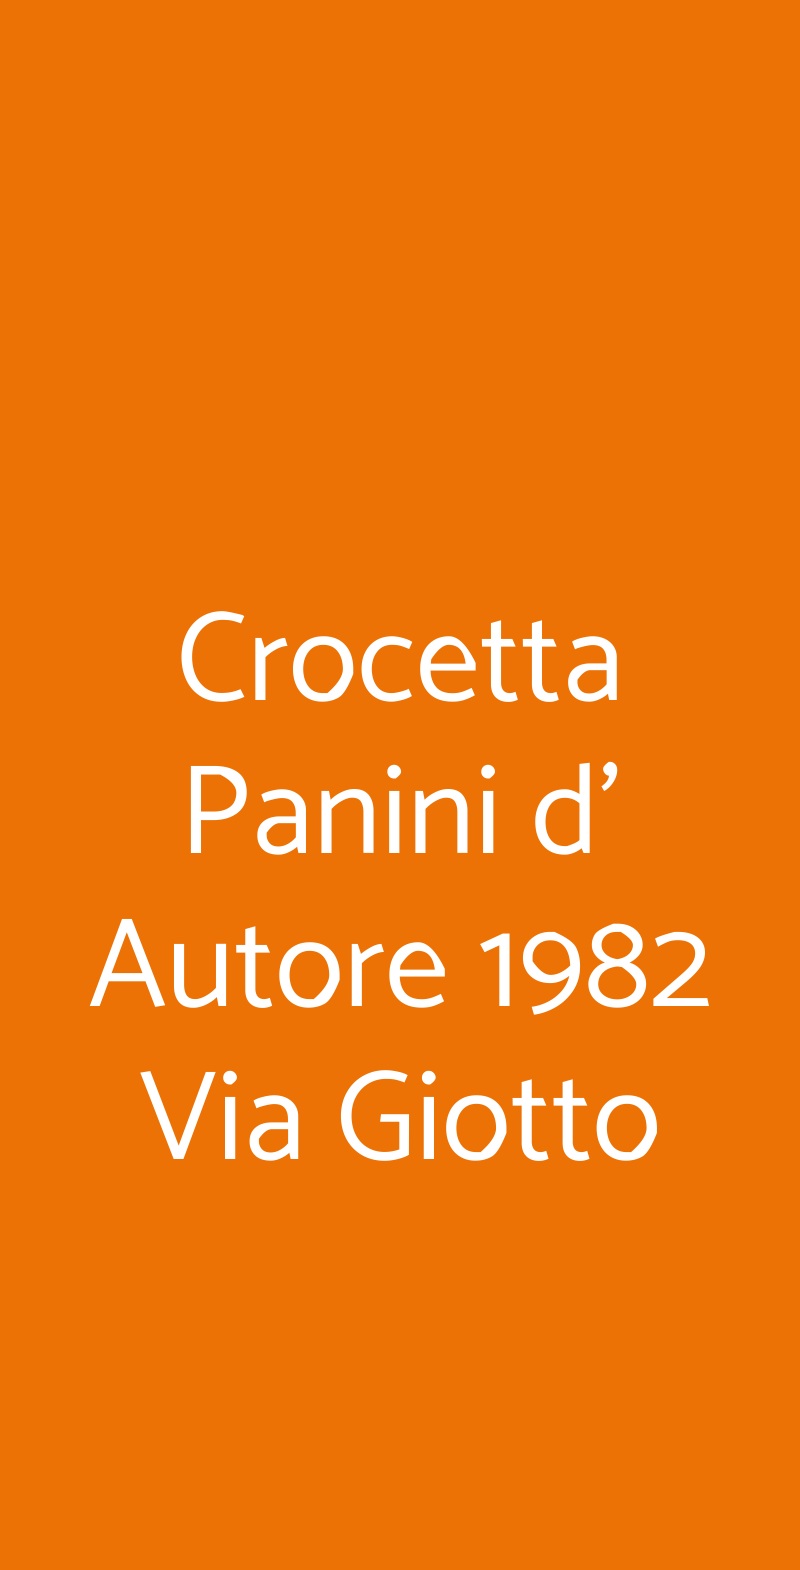 Crocetta Panini d' Autore 1982 Via Giotto Milano menù 1 pagina